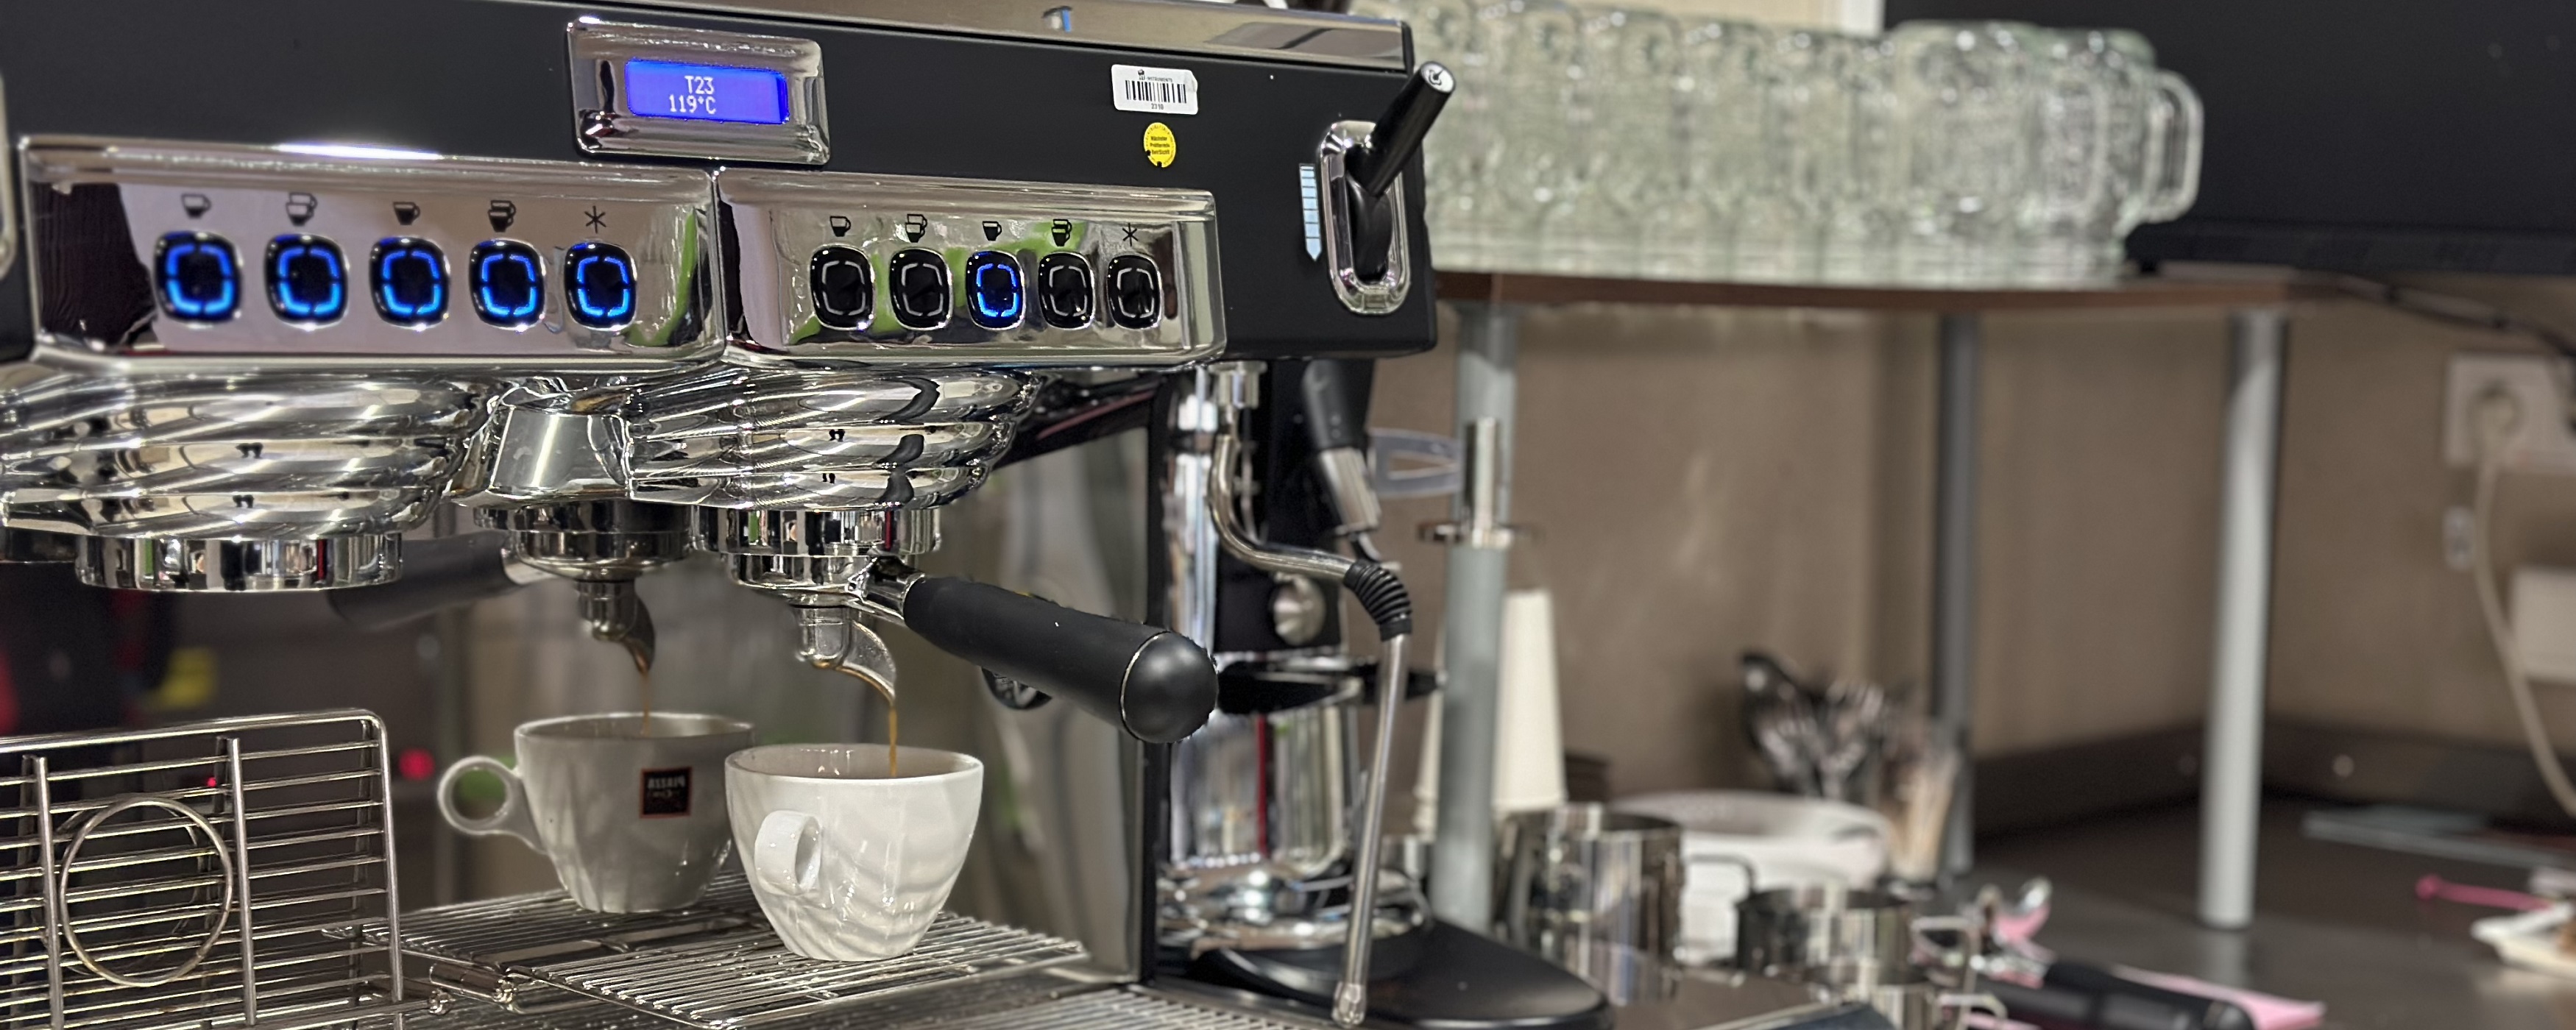 Bild: Kaffeemaschiene lässt Kaffee in eine Tasse laufen